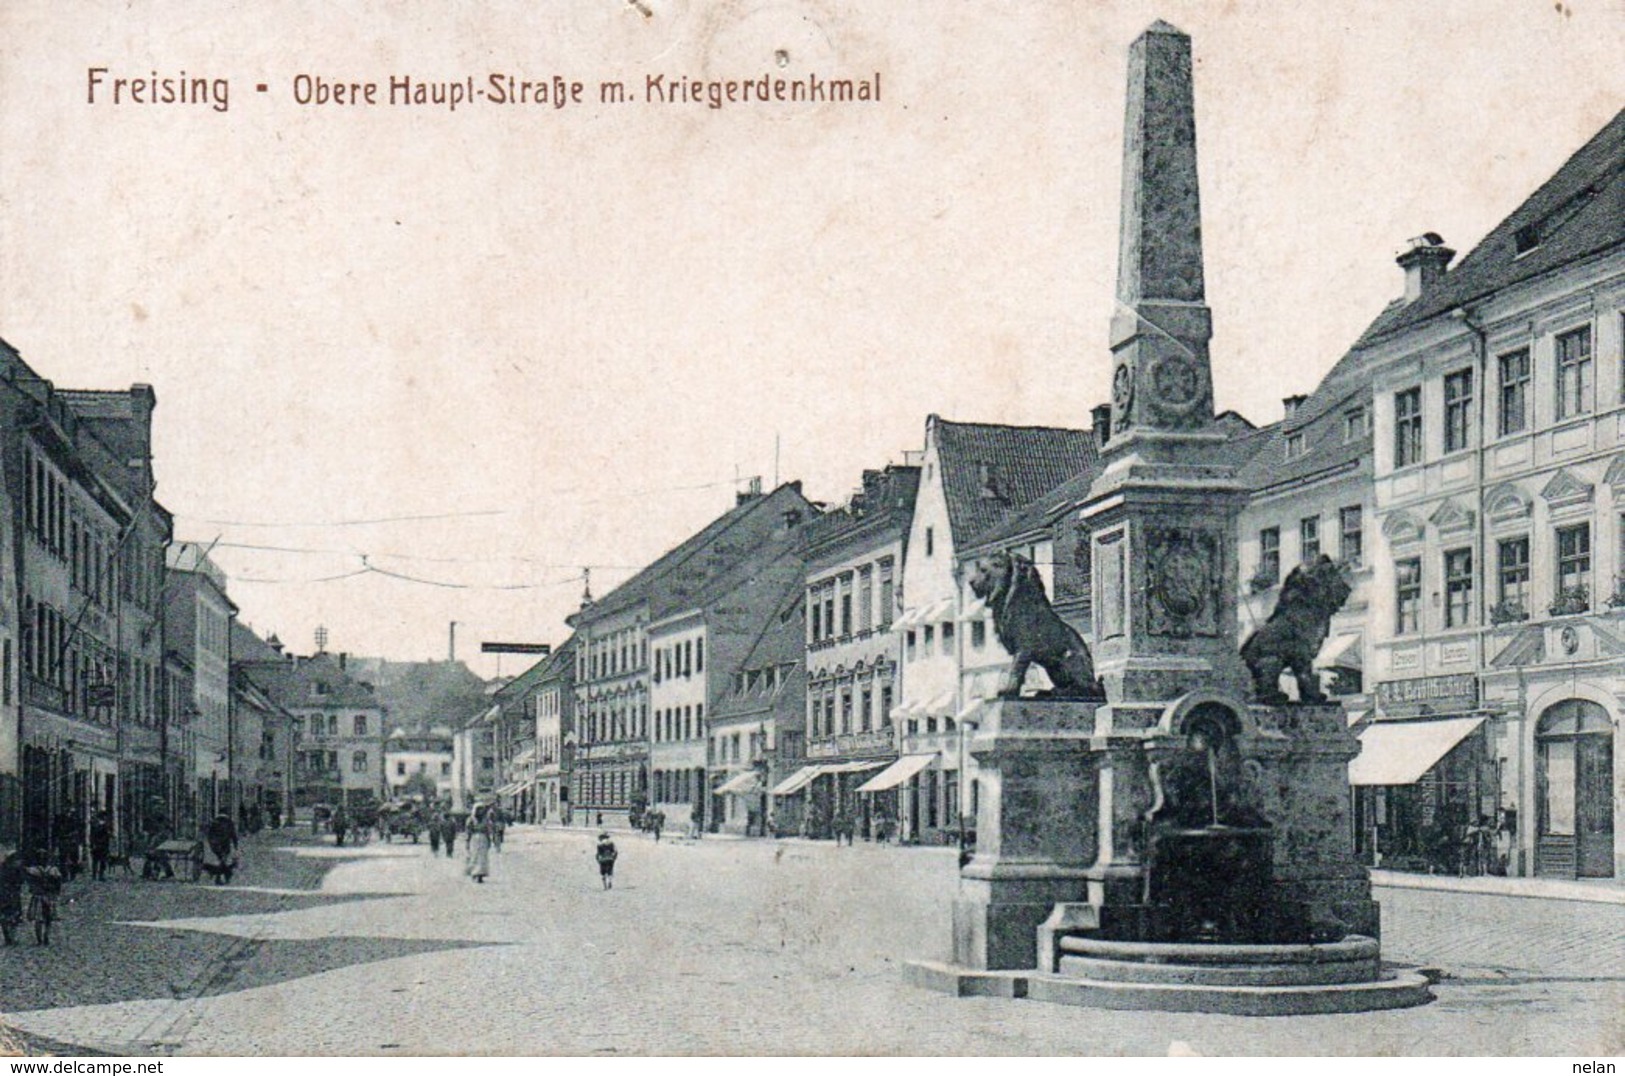 FREISING-OBERE HAUPT STRASSE M. KRIEGERDENKMAL-1925 - Freising